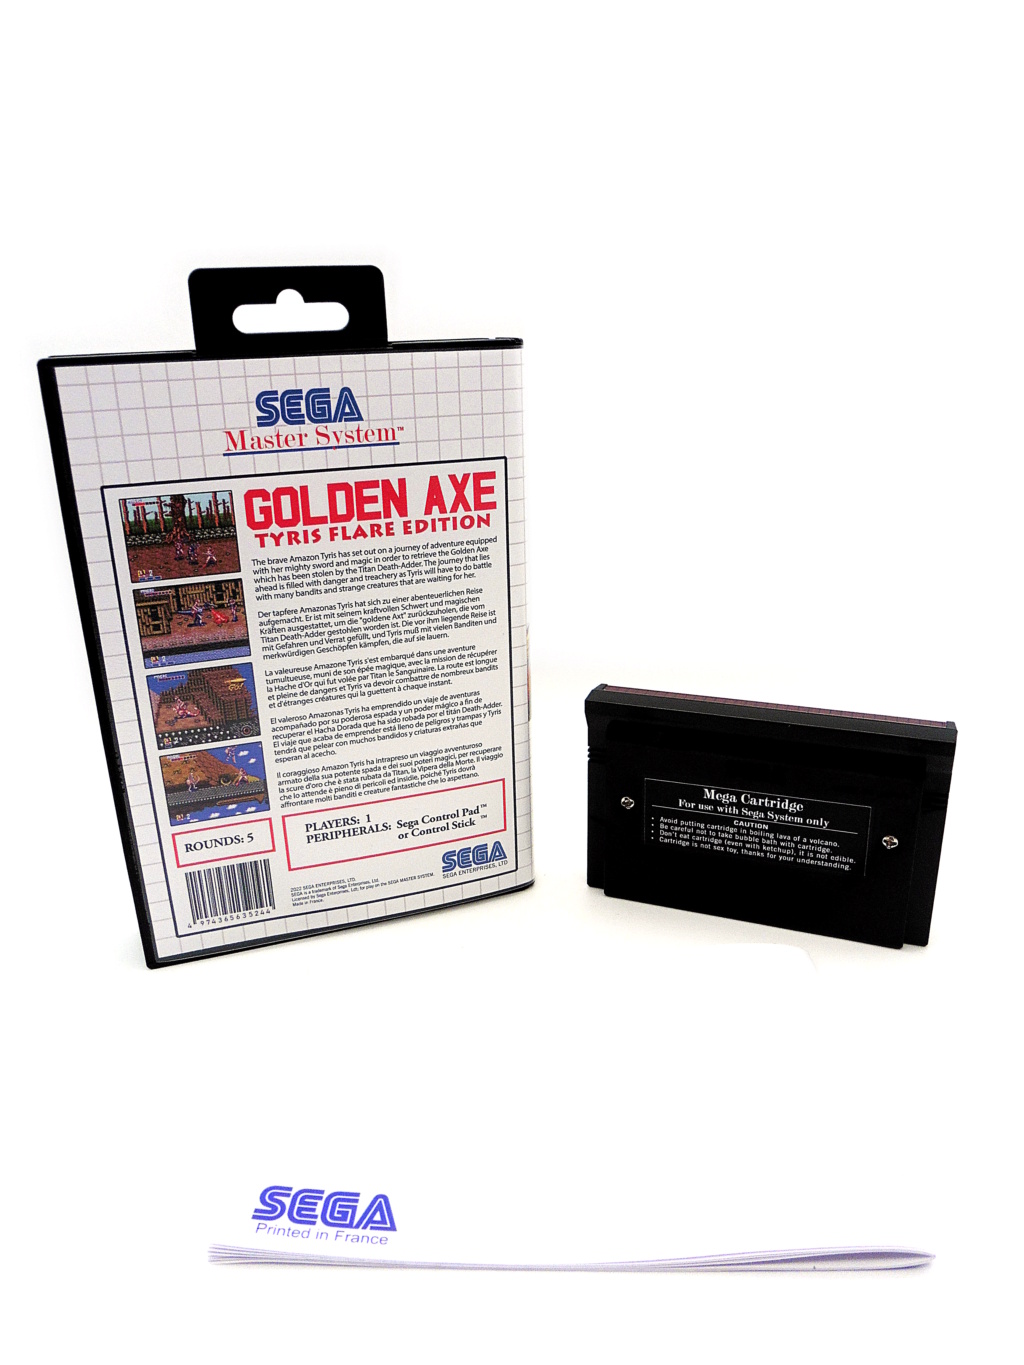 Golden Axe Tyris Flare Edition Golden17